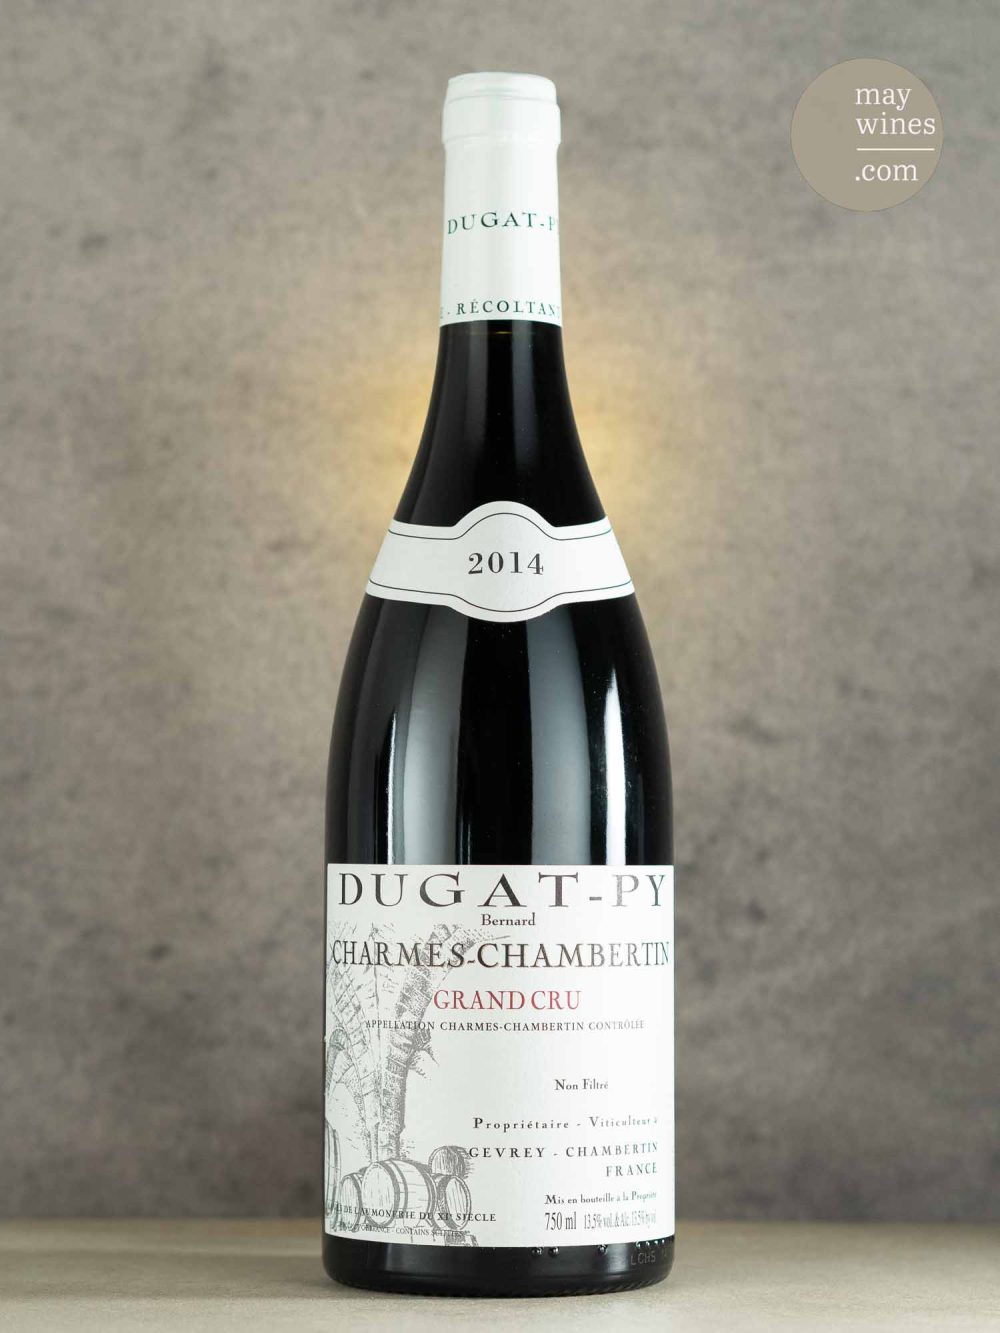 May Wines – Rotwein – 2014 Charmes-Chambertin Grand Cru - Domaine Dugat-Py